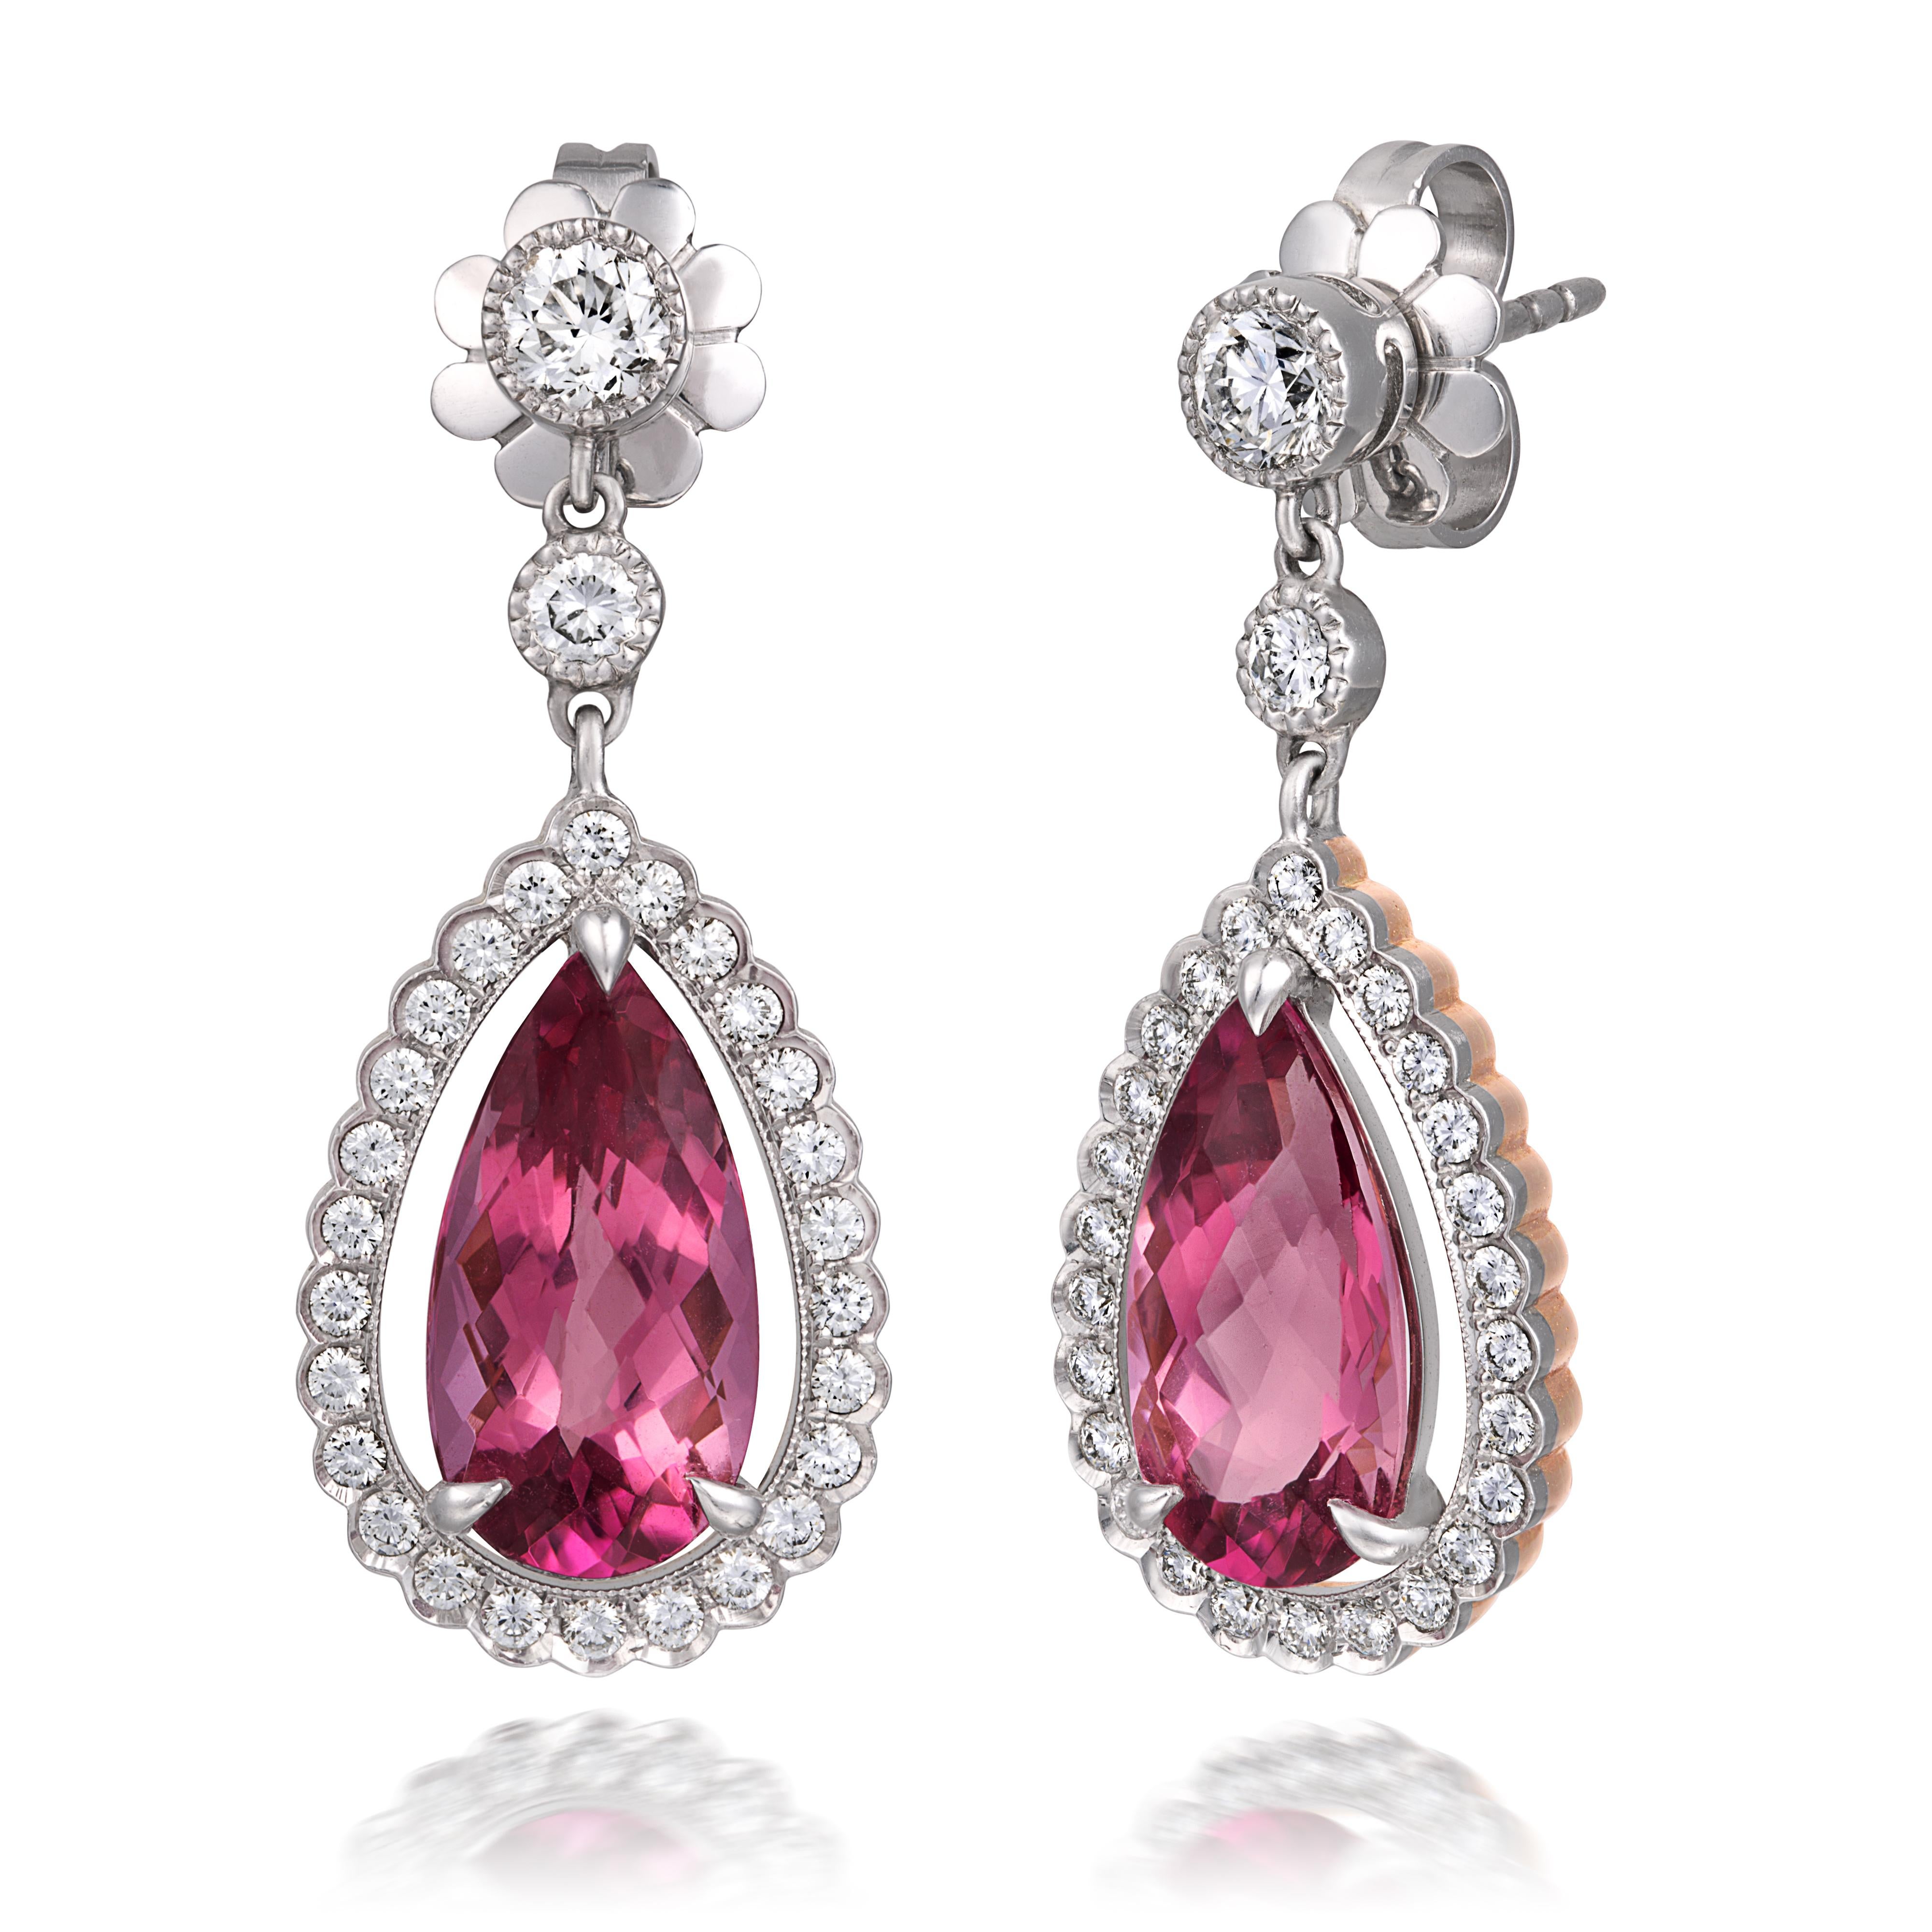 Erleben Sie die Faszination dieser tropfenförmigen Ohrringe, die mit 6,42 Karat rosa Turmalin und Diamanten besetzt sind. Die mit Diamanten besetzte Fassung aus Platin und 18-karätigem Gelbgold verbindet harmonisch moderne Handwerkskunst mit